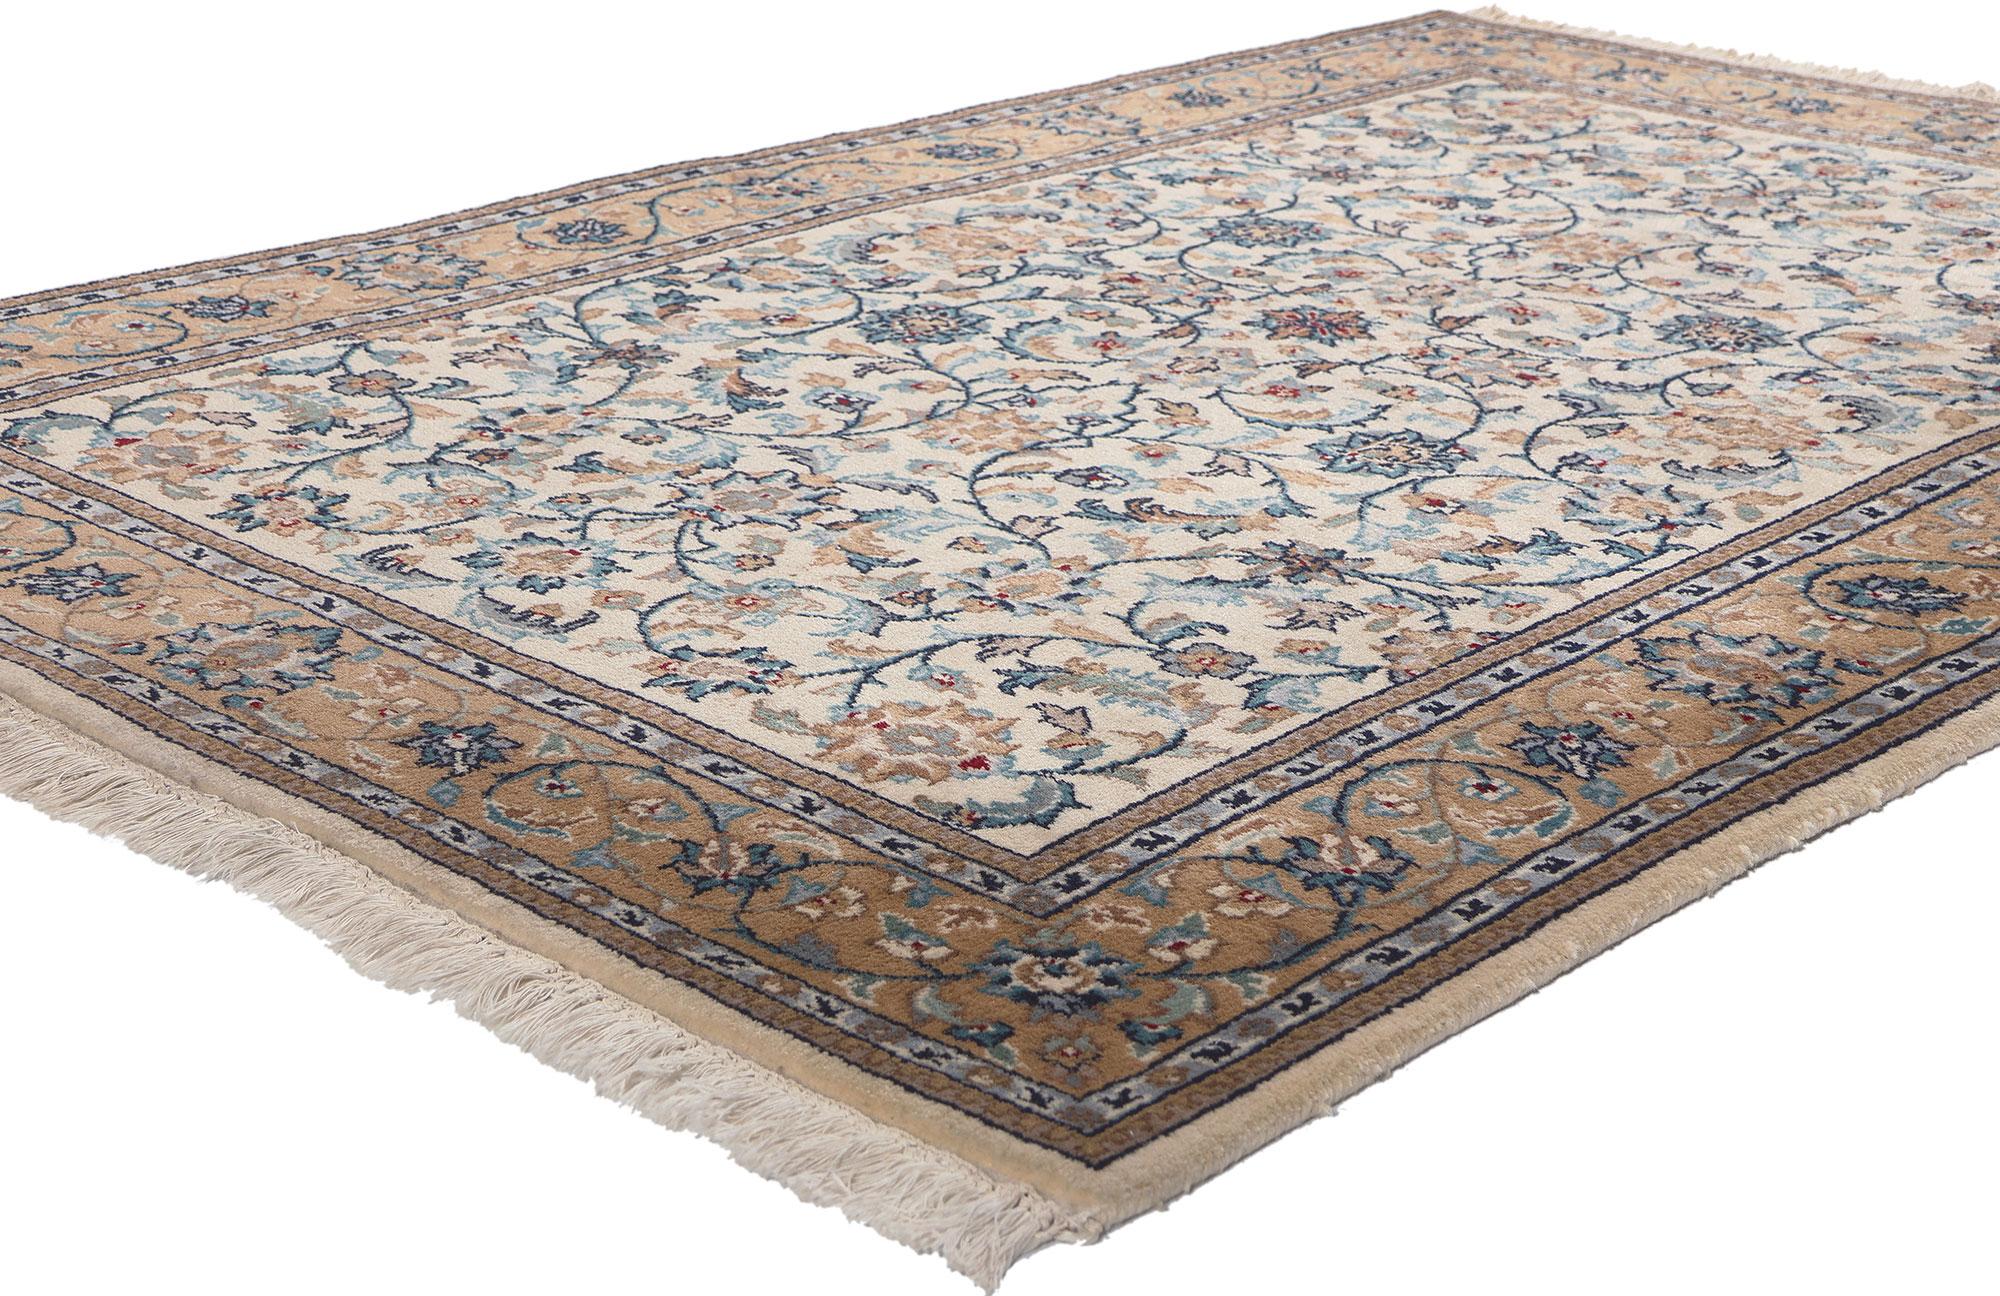 78691 Vintage Indischer Kashan Teppich, 04'01 x 06'00. Erleben Sie die exquisite Manifestation einer vergangenen Epoche - einen indischen Kashan-Teppich im Vintage-Stil, der die viktorianische Eleganz in ihrer reinsten Form verkörpert und sorgfältig